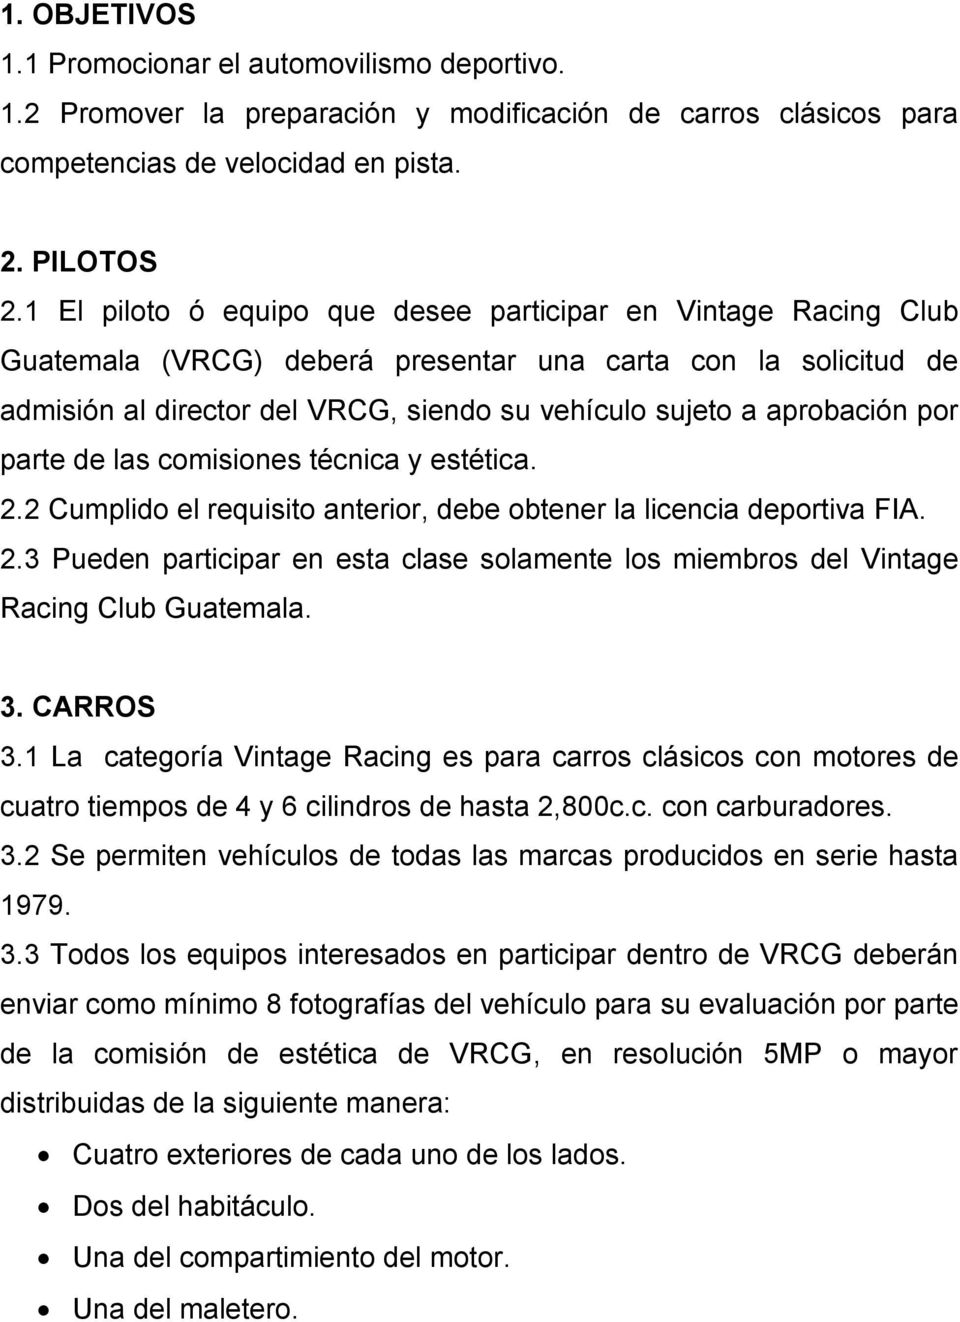 por parte de las comisiones técnica y estética. 2.2 Cumplido el requisito anterior, debe obtener la licencia deportiva FIA. 2.3 Pueden participar en esta clase solamente los miembros del Vintage Racing Club Guatemala.